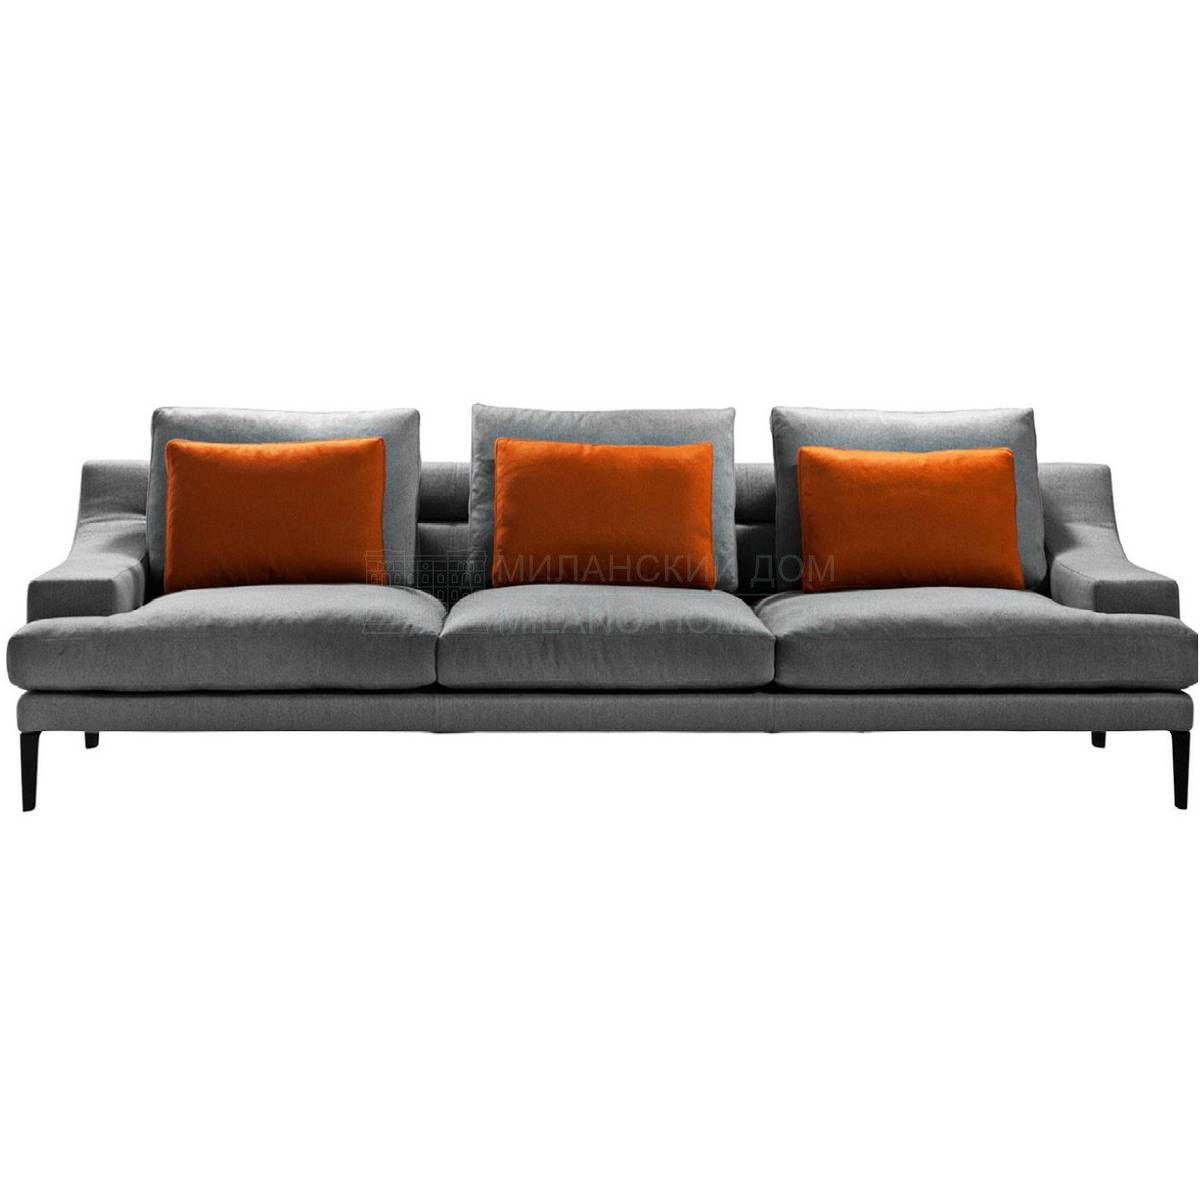 Прямой диван Megara divano из Италии фабрики DRIADE